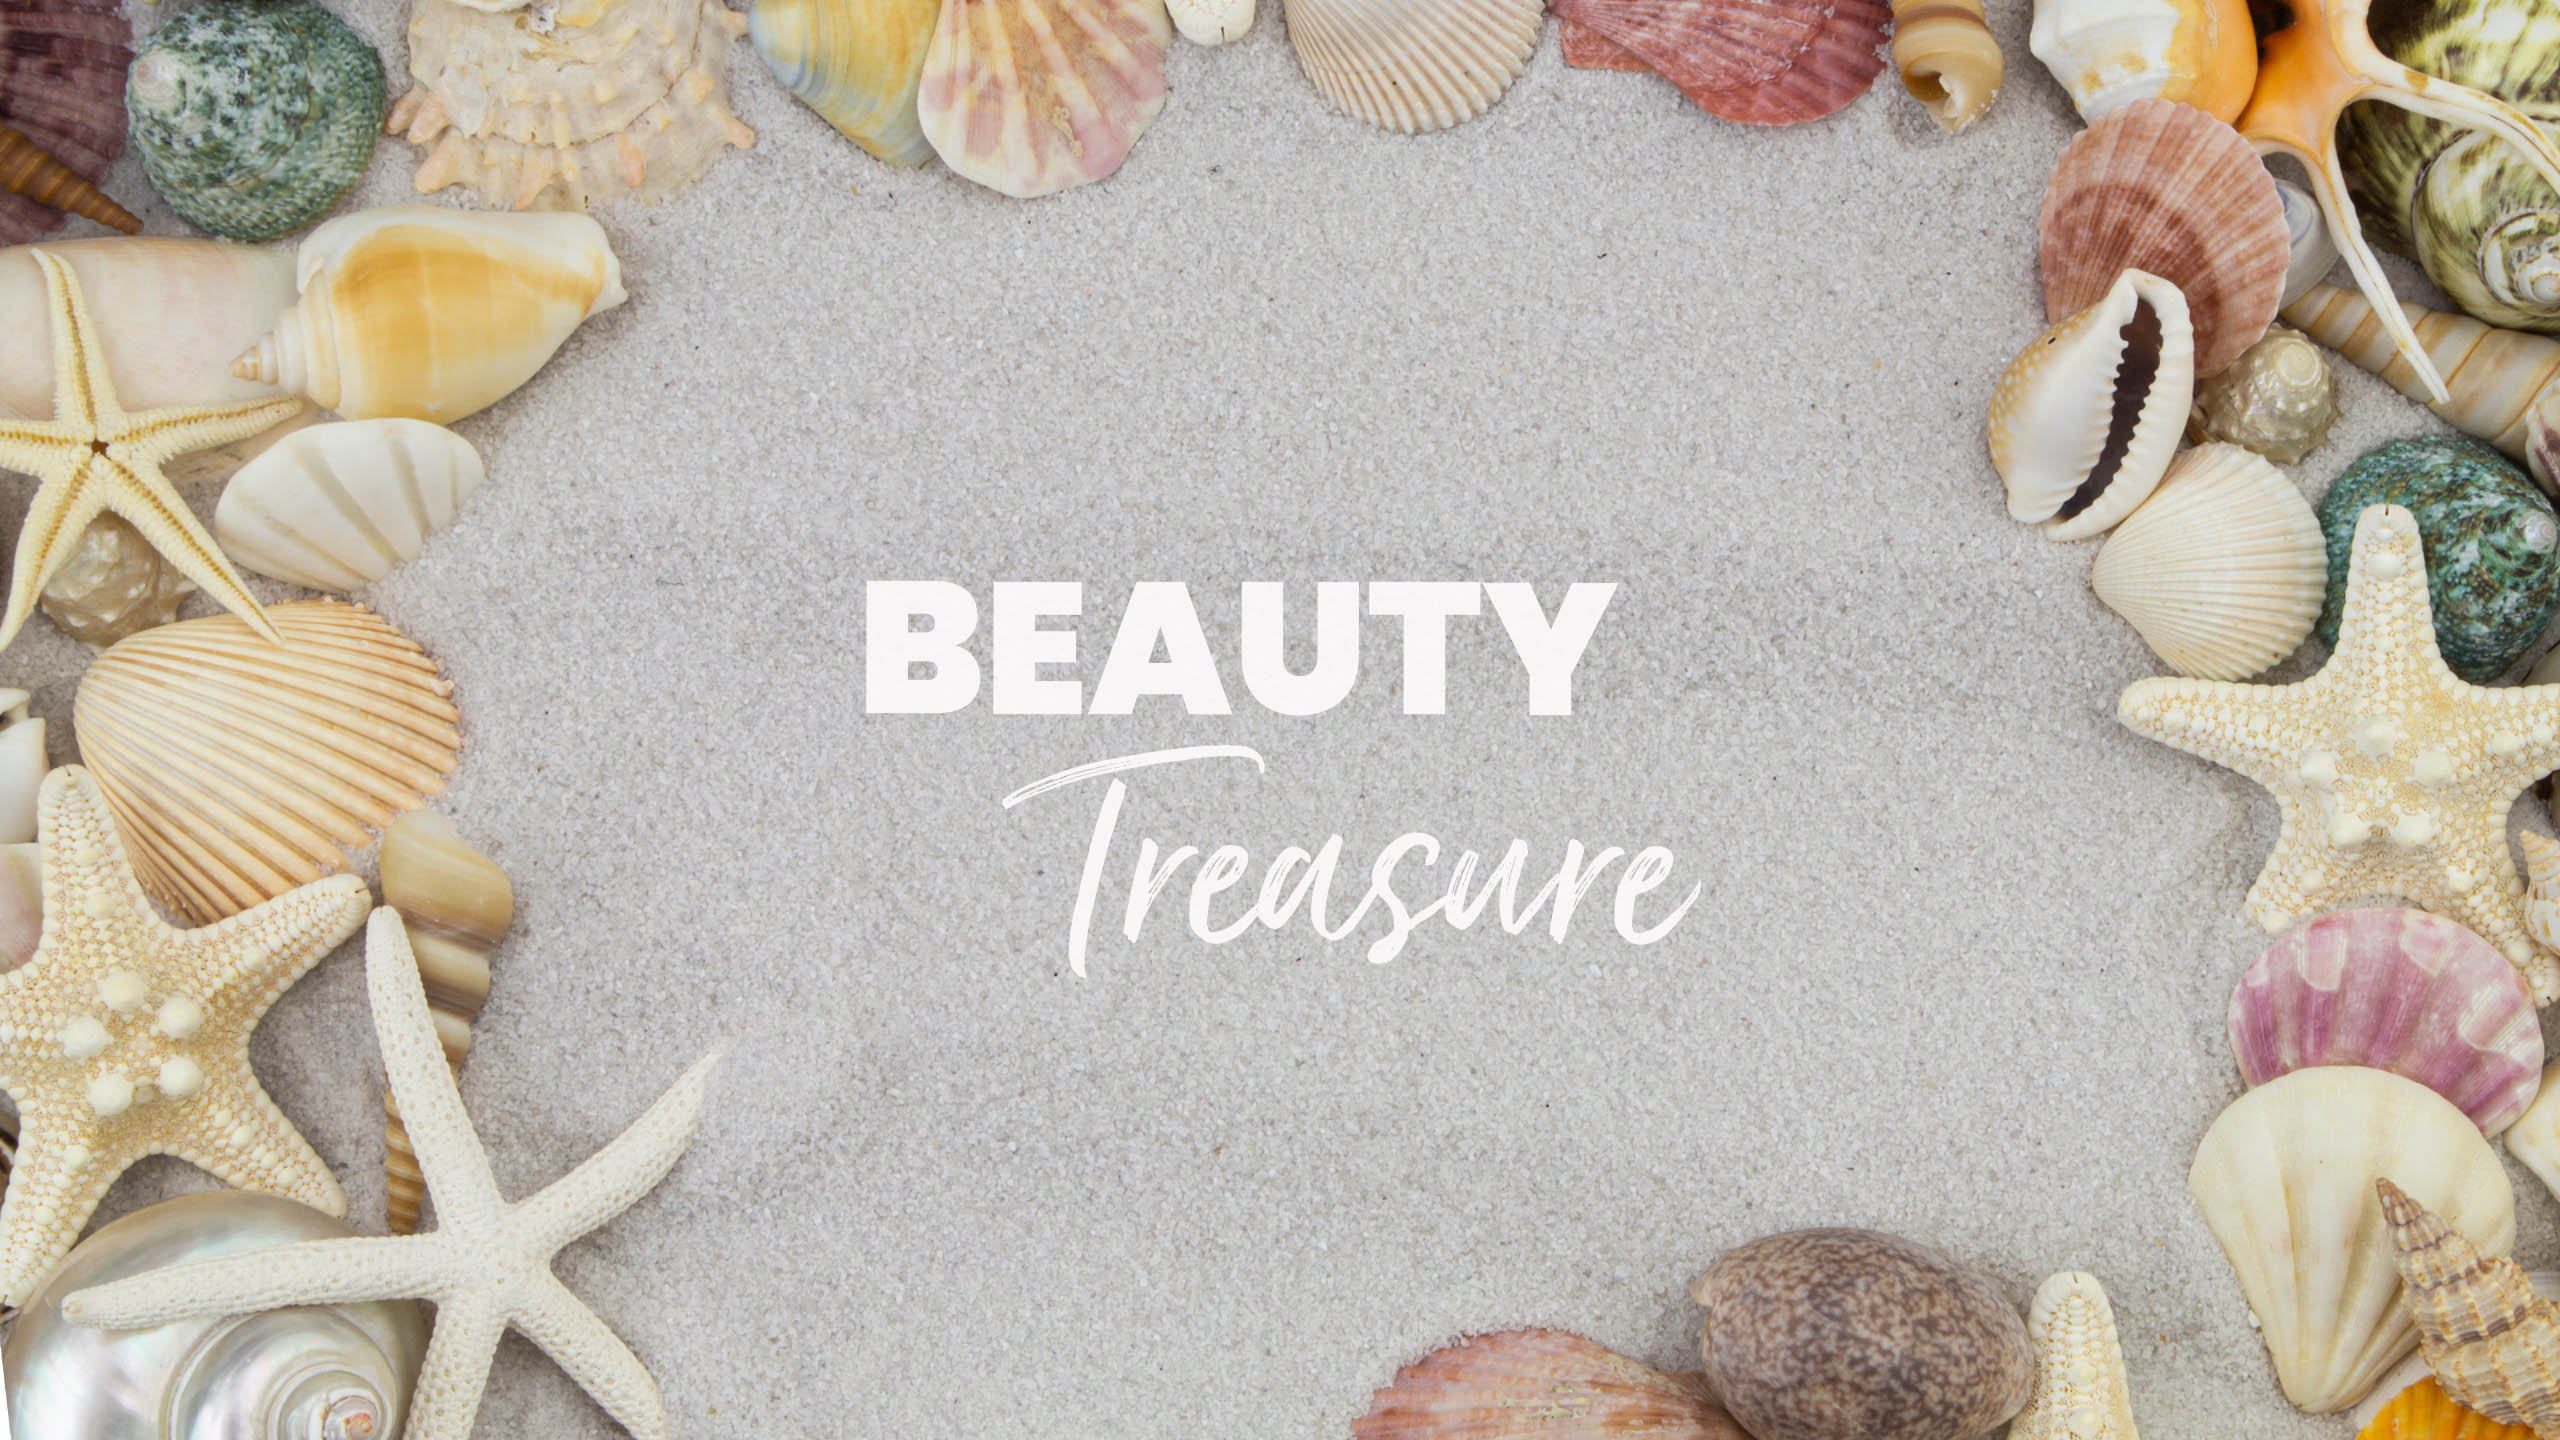 glossybox-wallpaper-screensaver-juli-beauty-treasures-2021-gratis